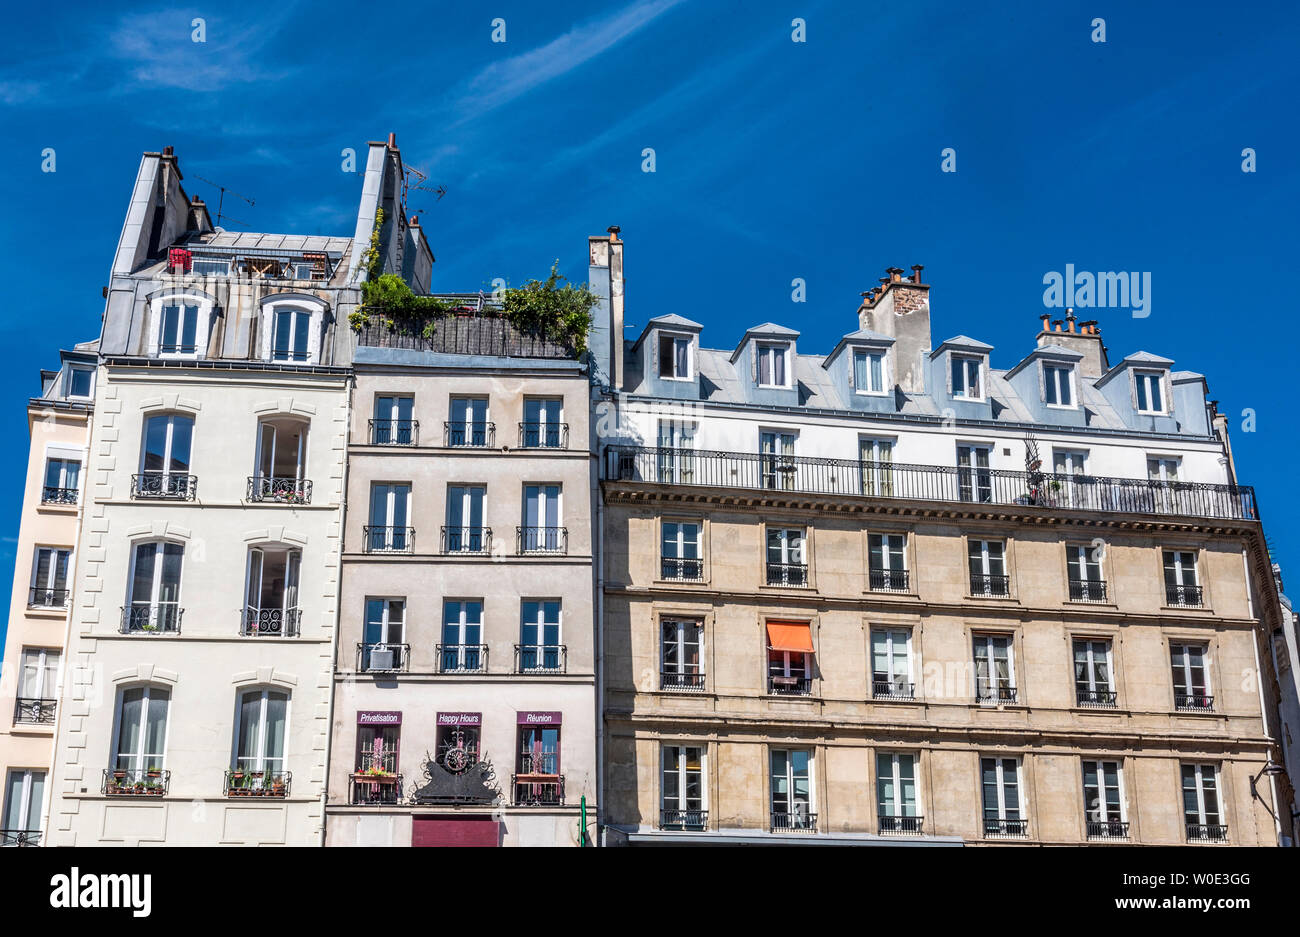 France, 1st arrondissement of Paris, buildings on rue Saint-Honoré Stock Photo